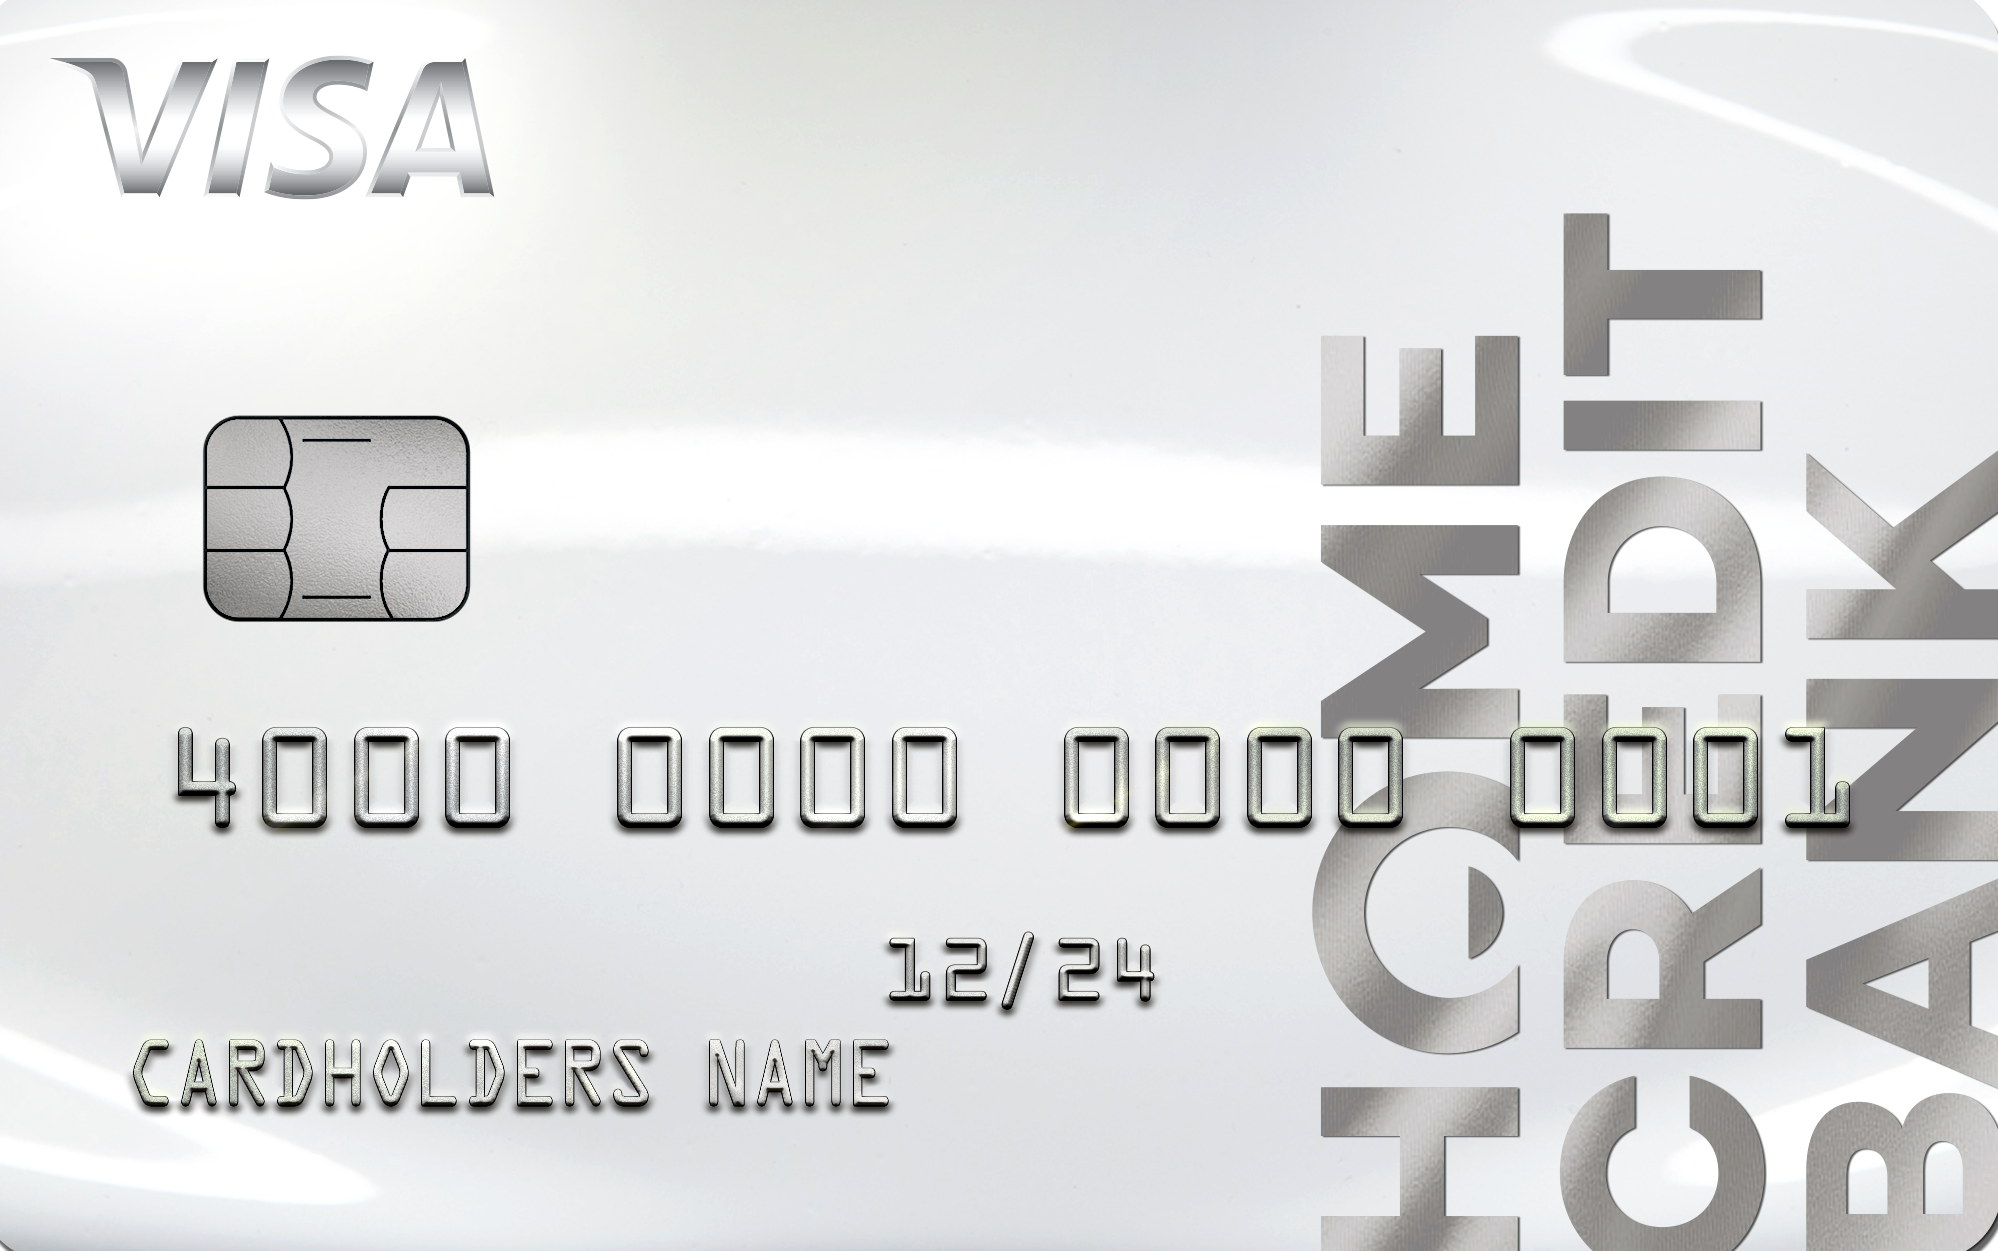 Кредитная карта хоум кредит условия пользования и проценты где взять кредит без справок спб